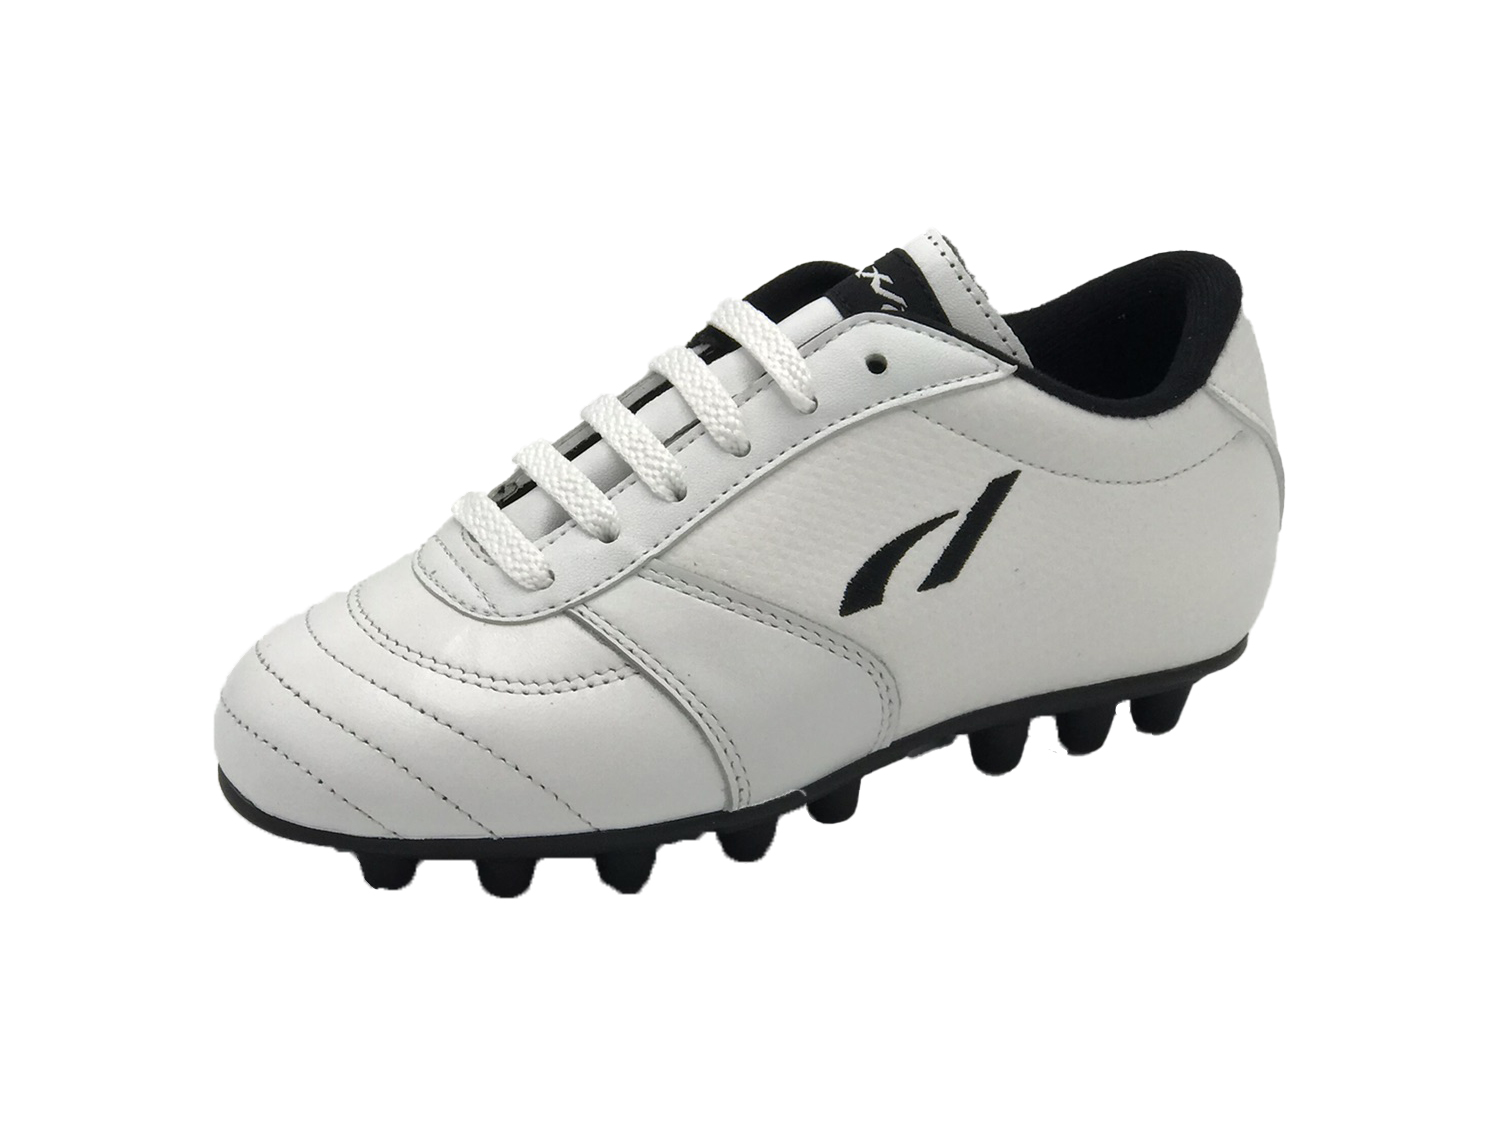 modello Classic Junior Bianco - Scarpe da calcio artigianali - Danese Calzature